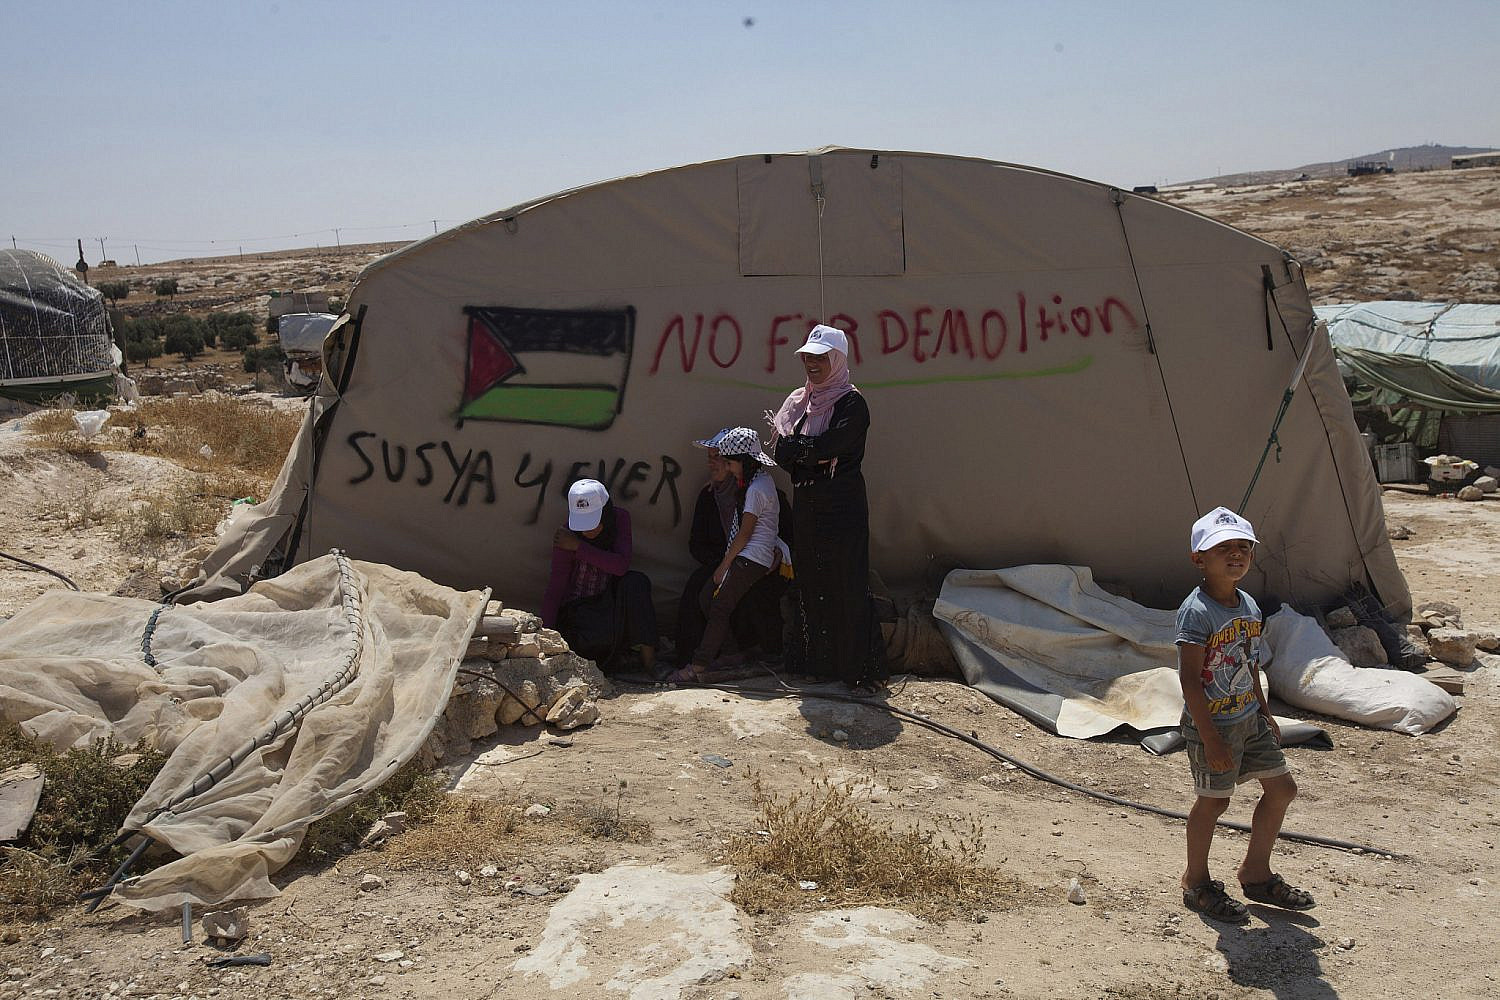 אוהל מחאה בכפר סוסיא, ביוני 2012 (צילום: יותם רונן / אקטיבסטילס)